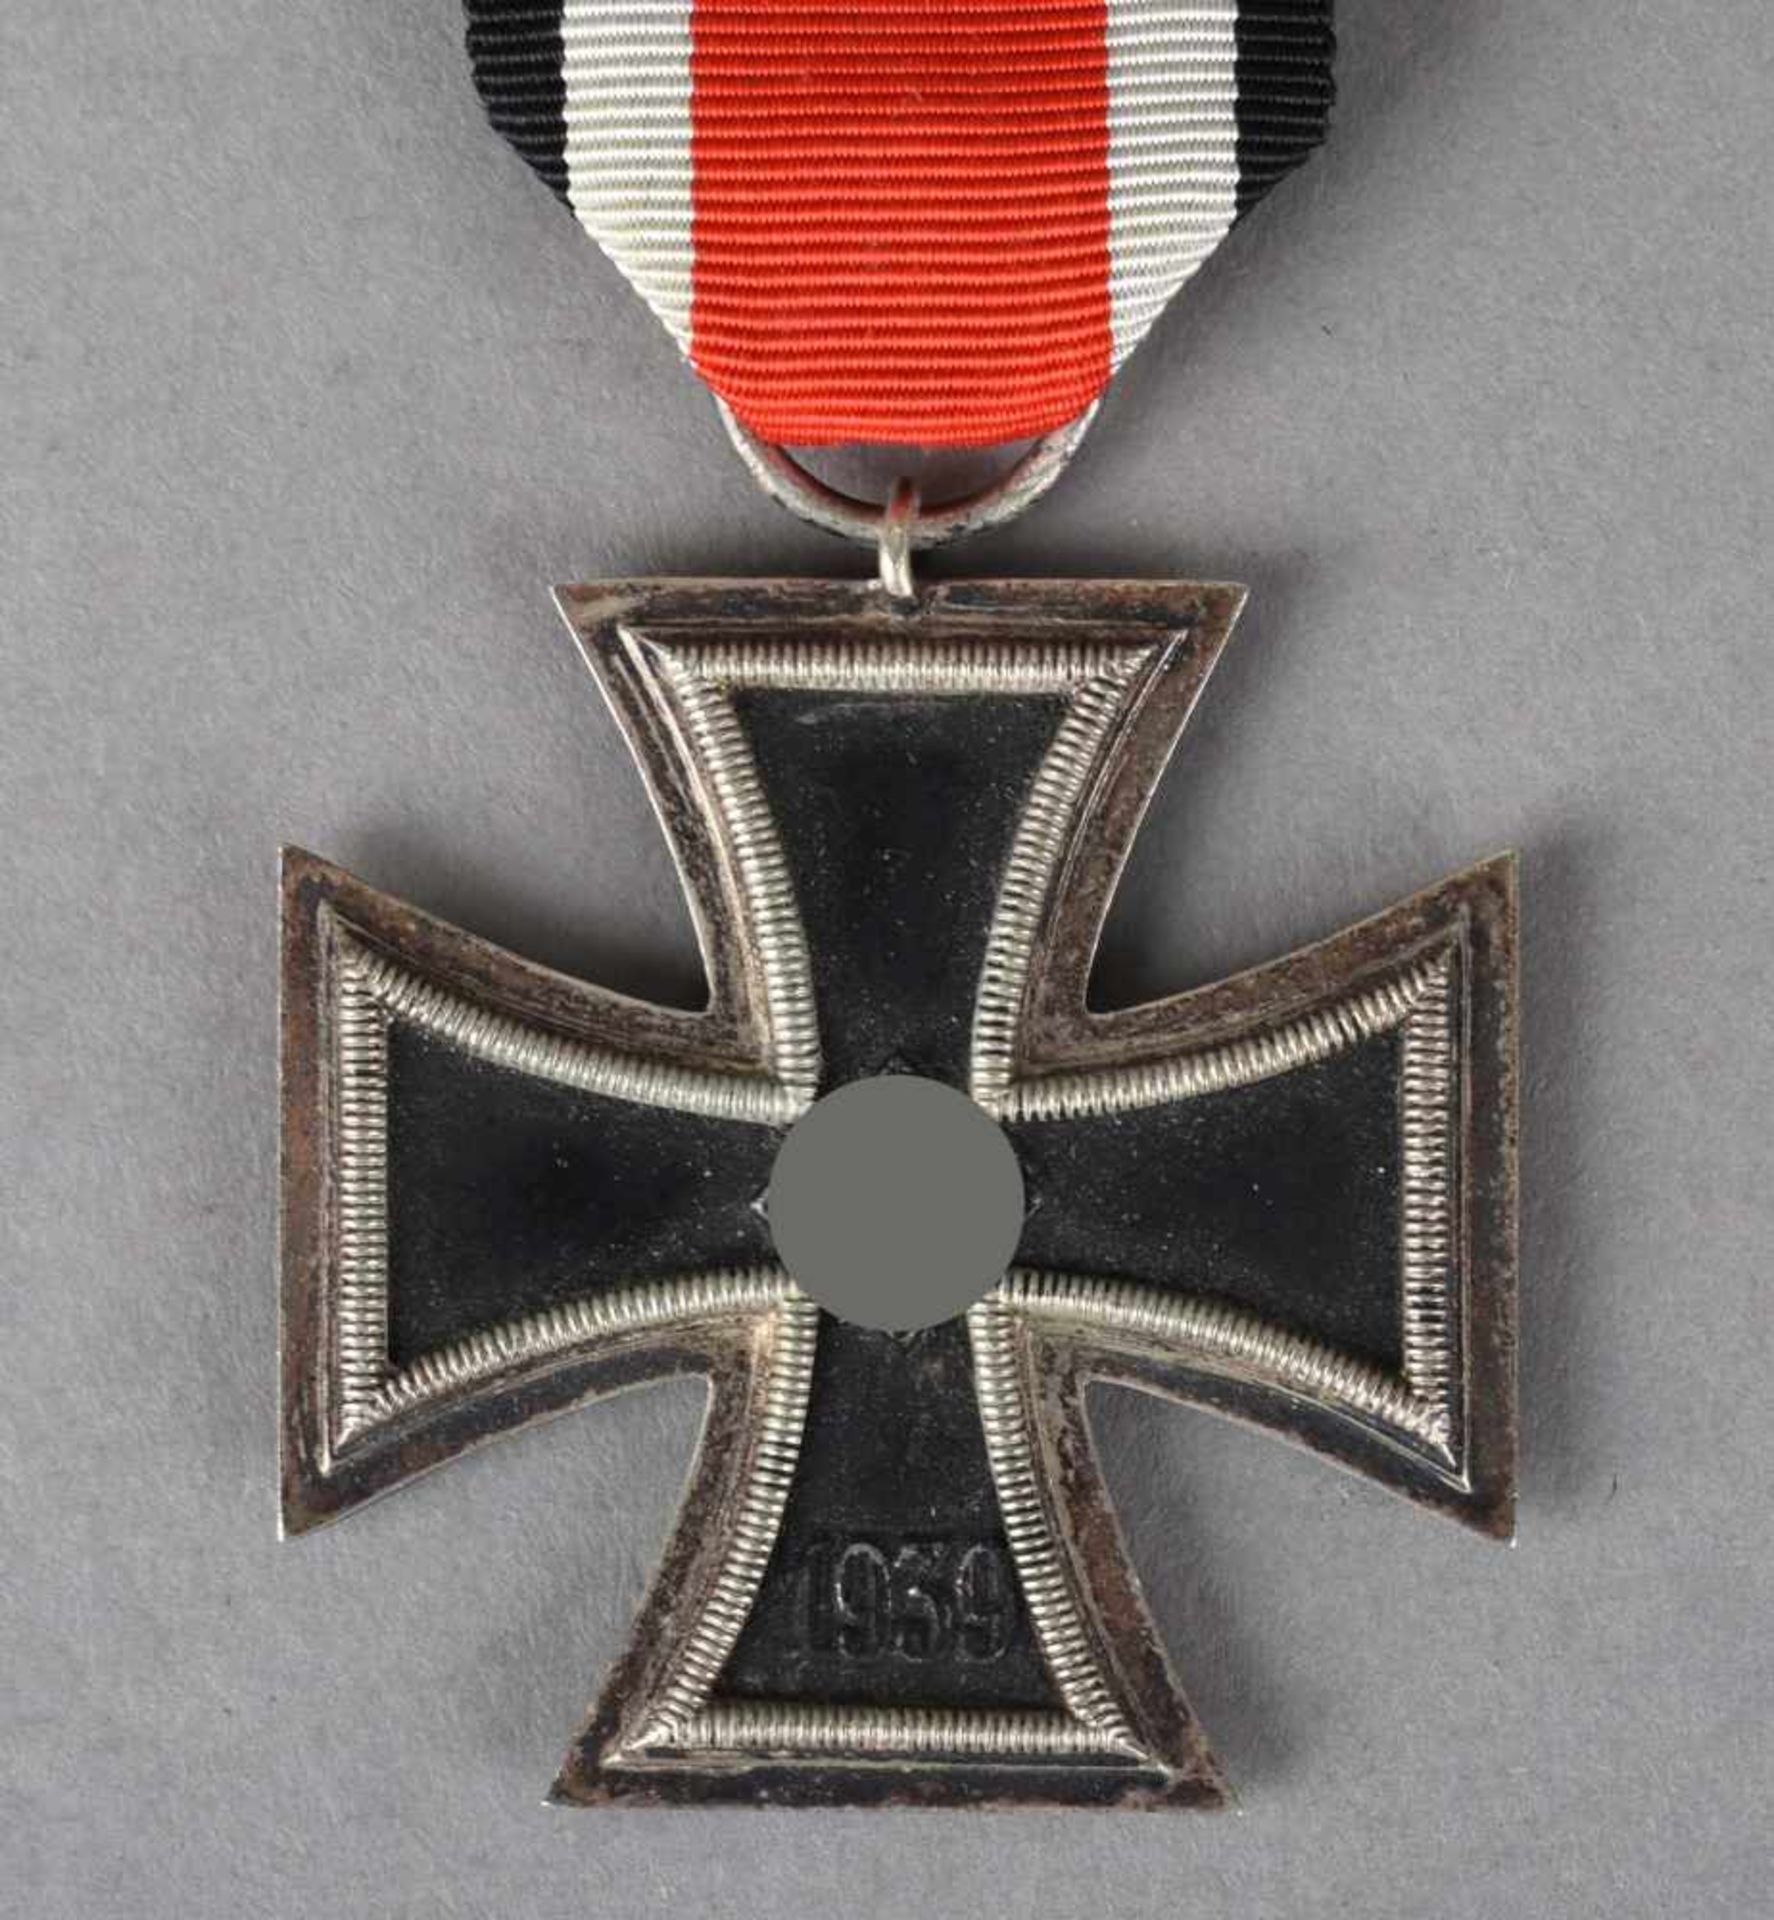 Kampfauszeichnung III. Reich Eisernes Kreuz 1939, 2. Klasse, am schwarz-weiß-roten Band, - Bild 2 aus 2